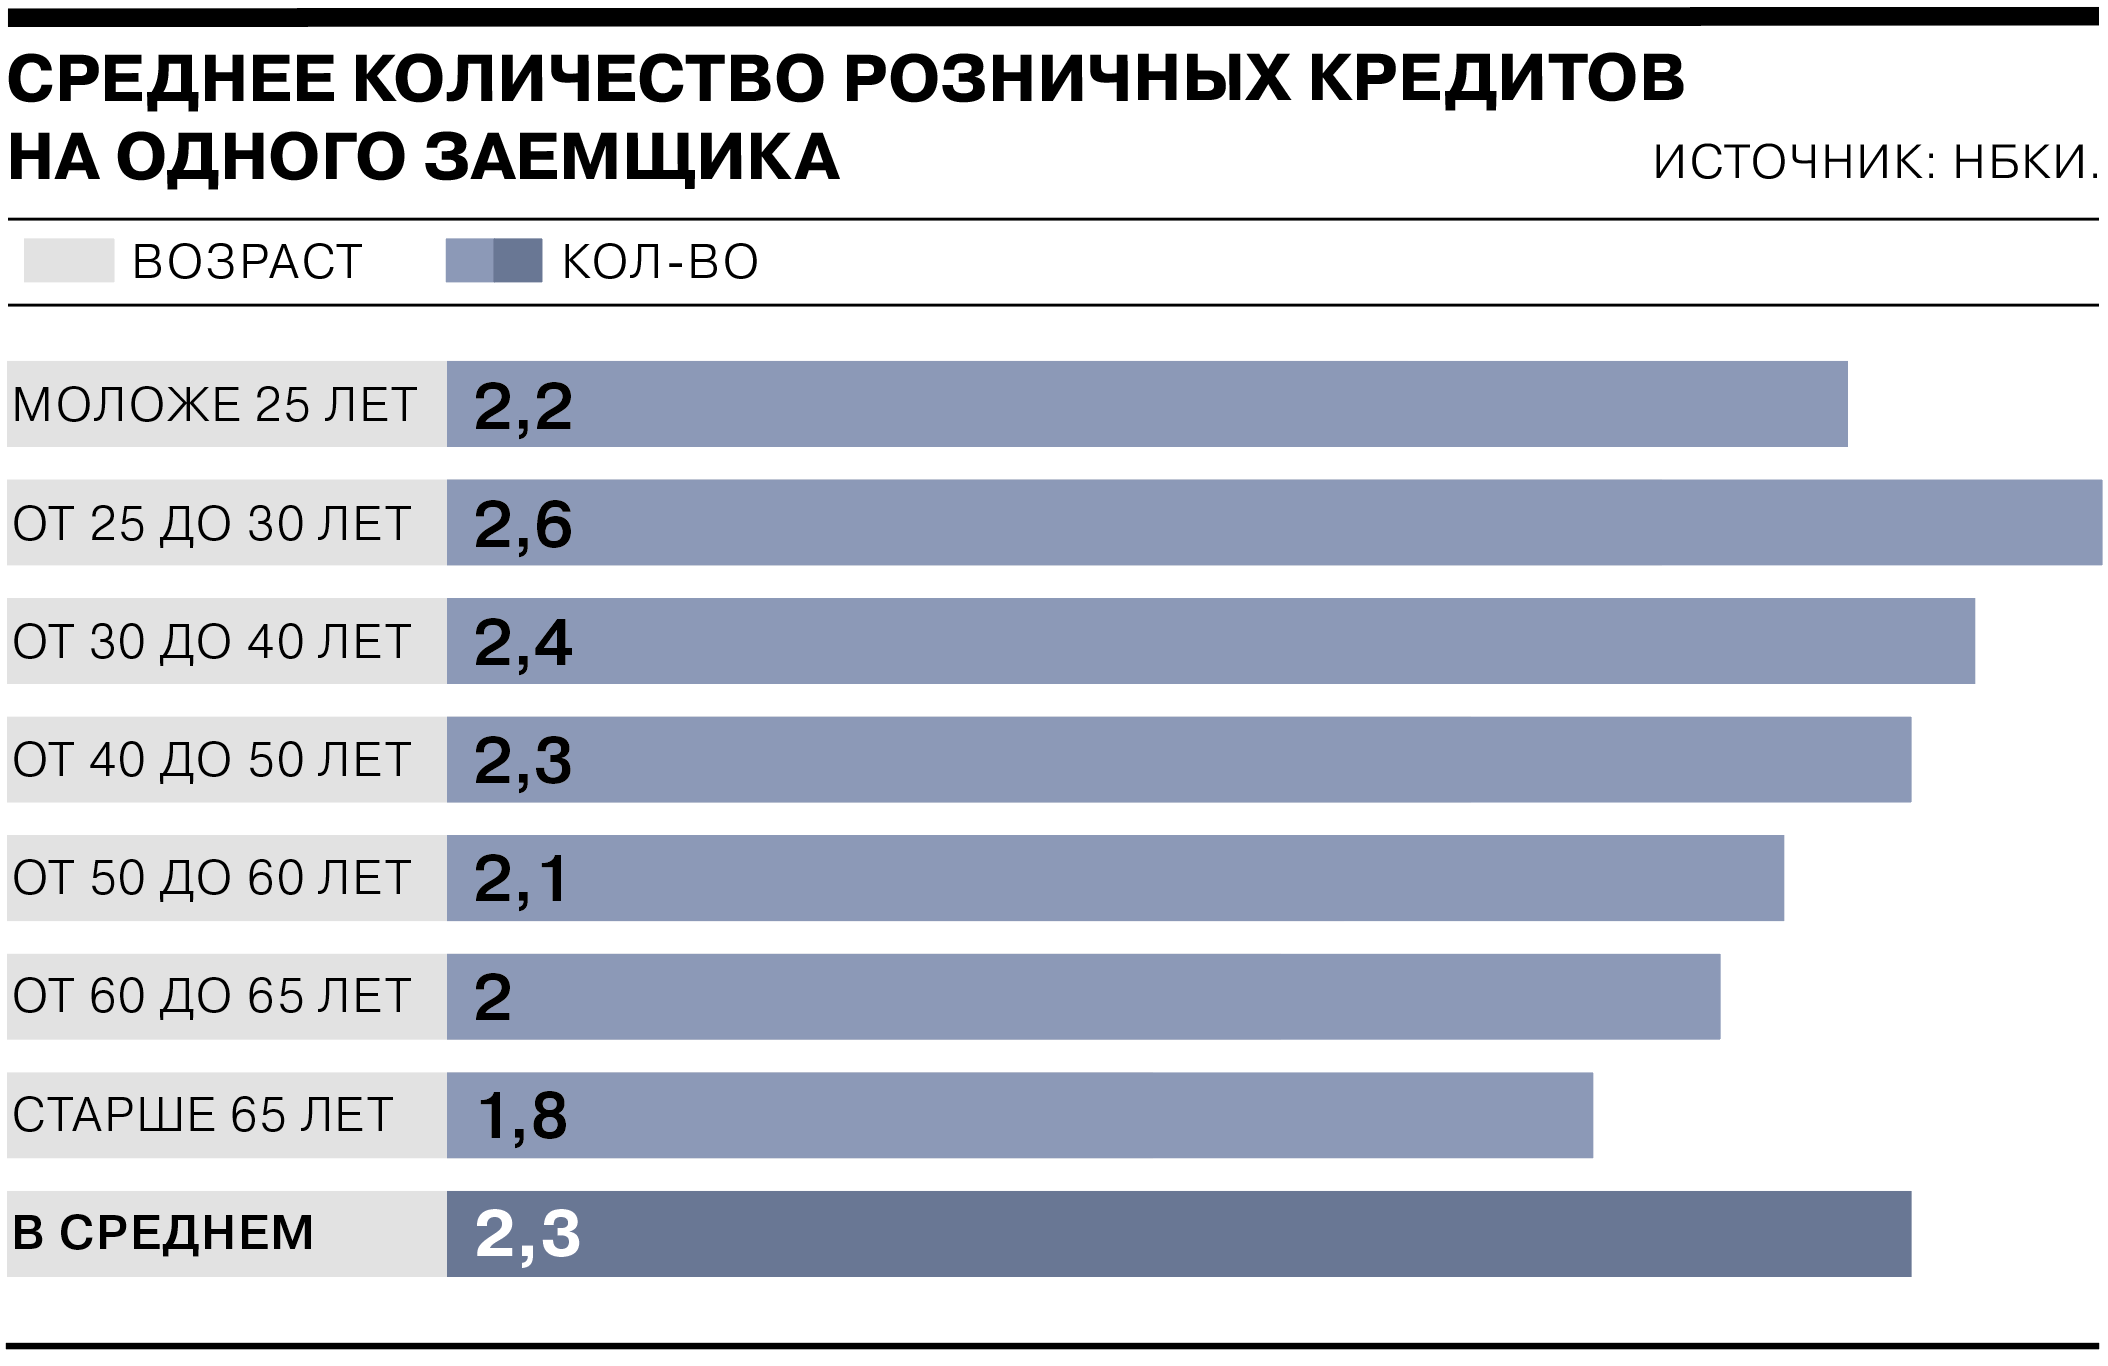 В 2022 году на одного российского заемщика приходилось в среднем по 2,3 розничного кредита